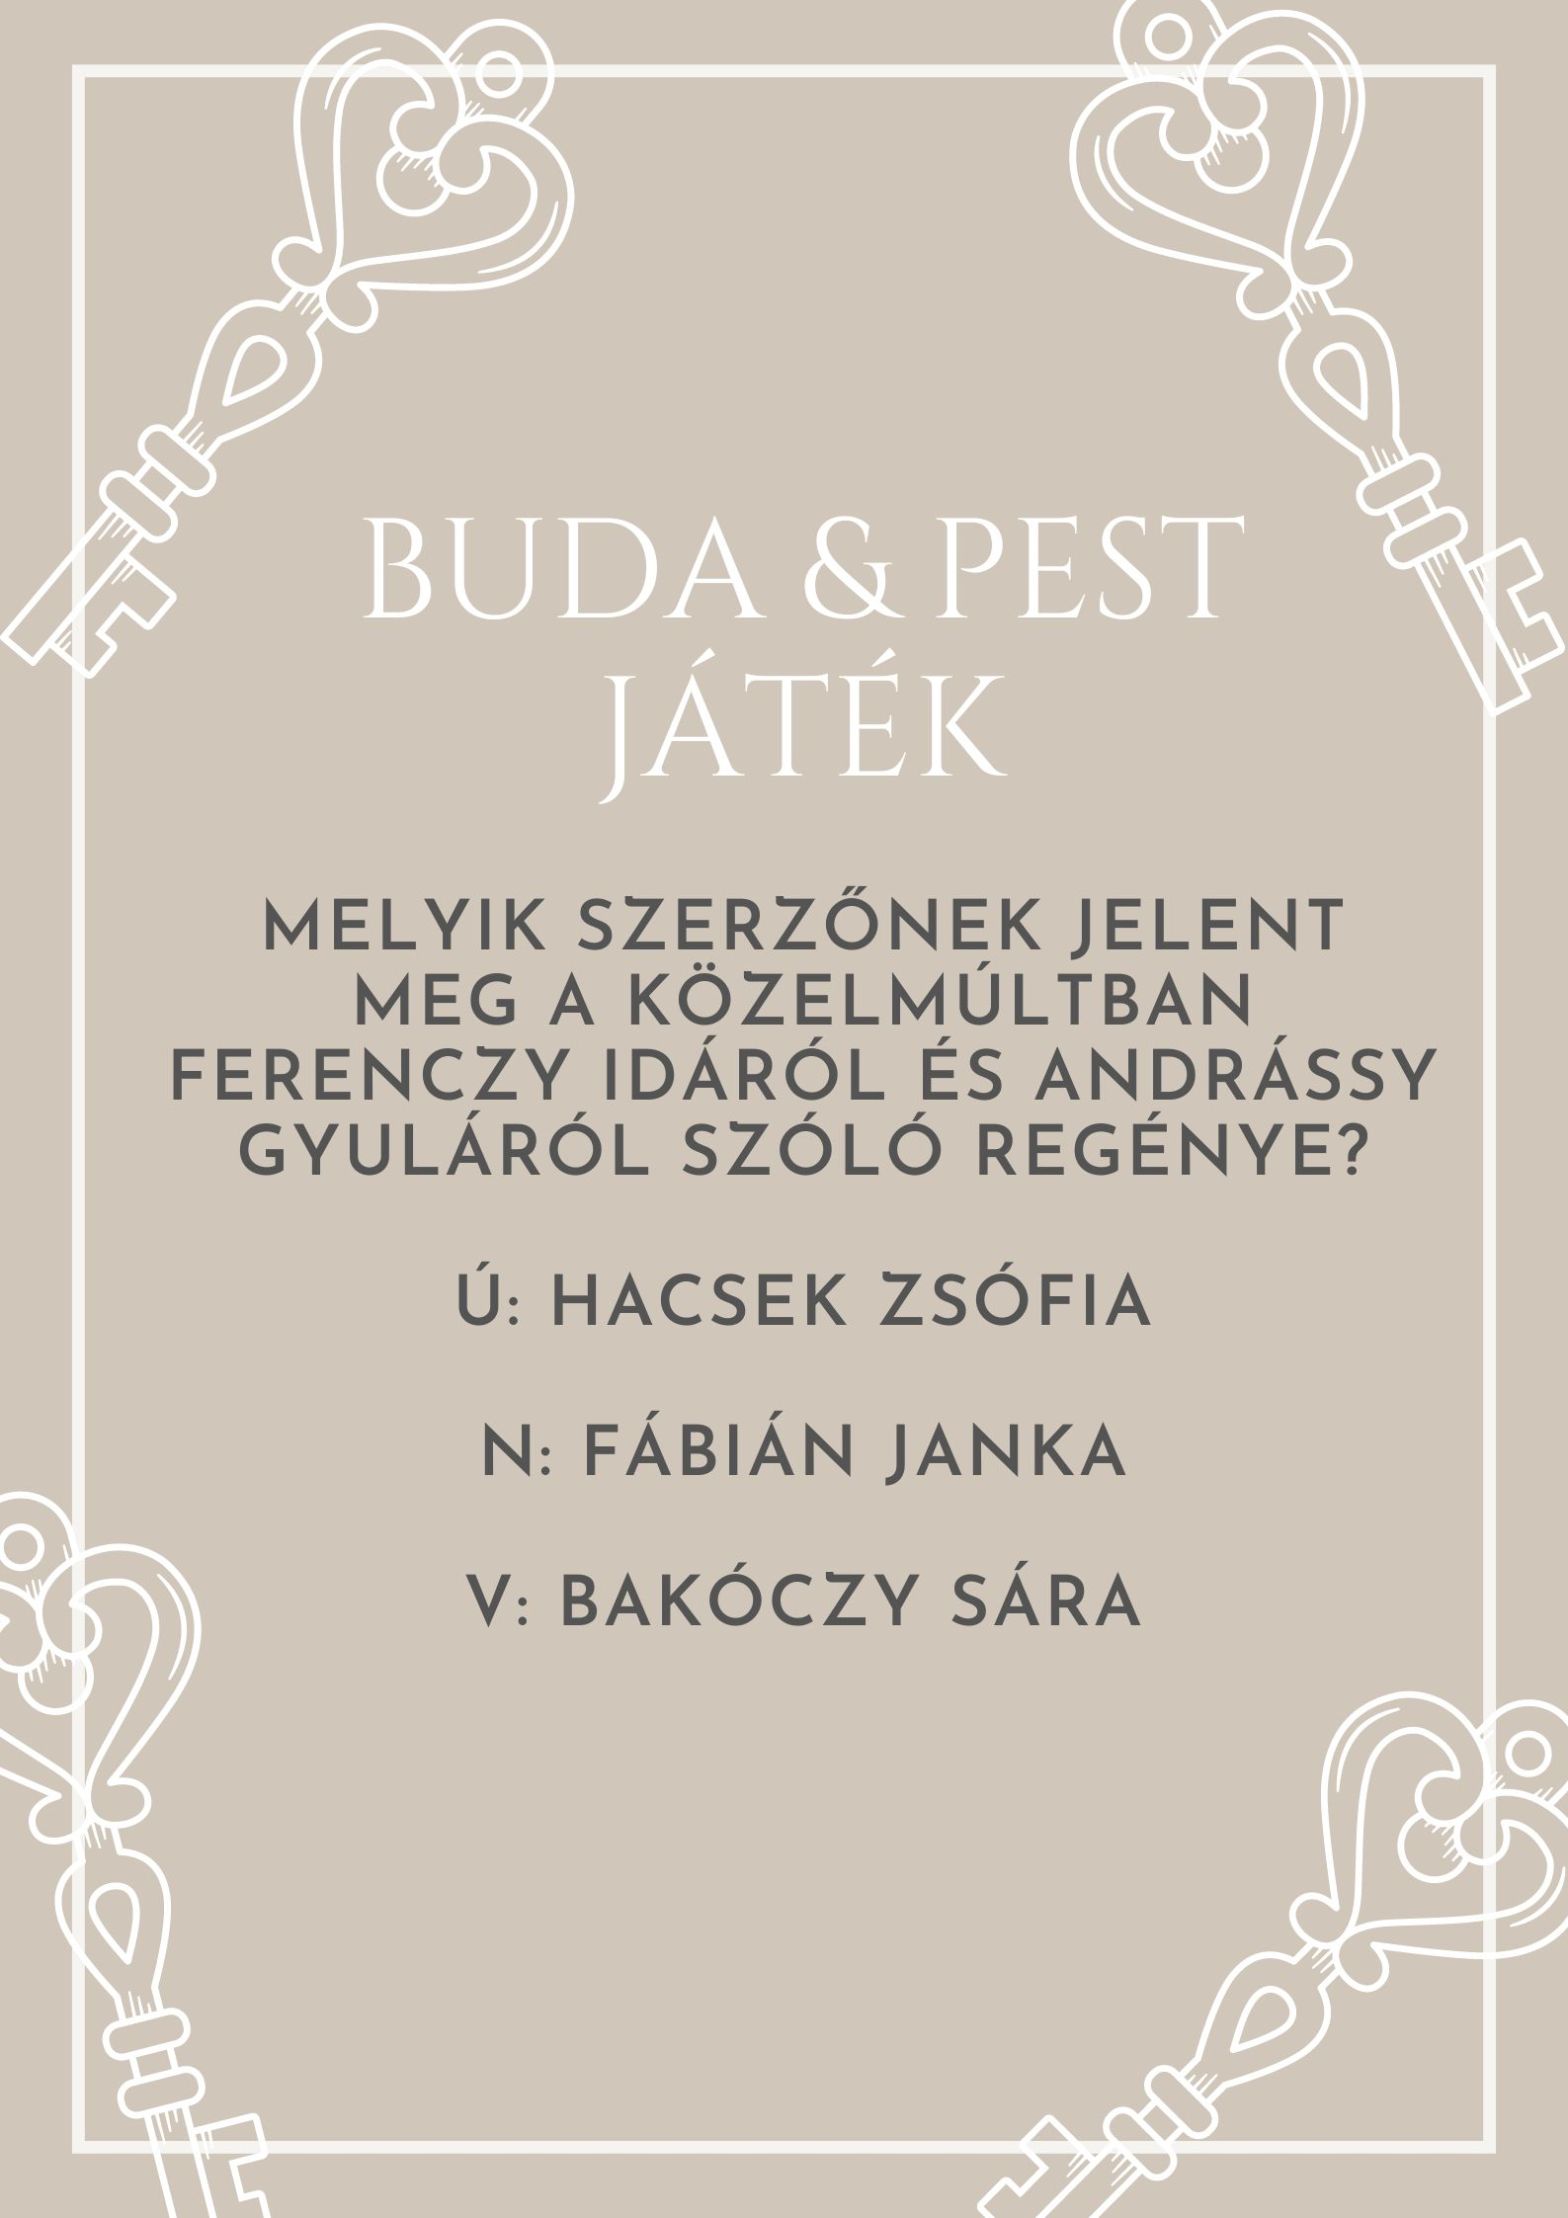 Buda & Pest regény nyereményjáték